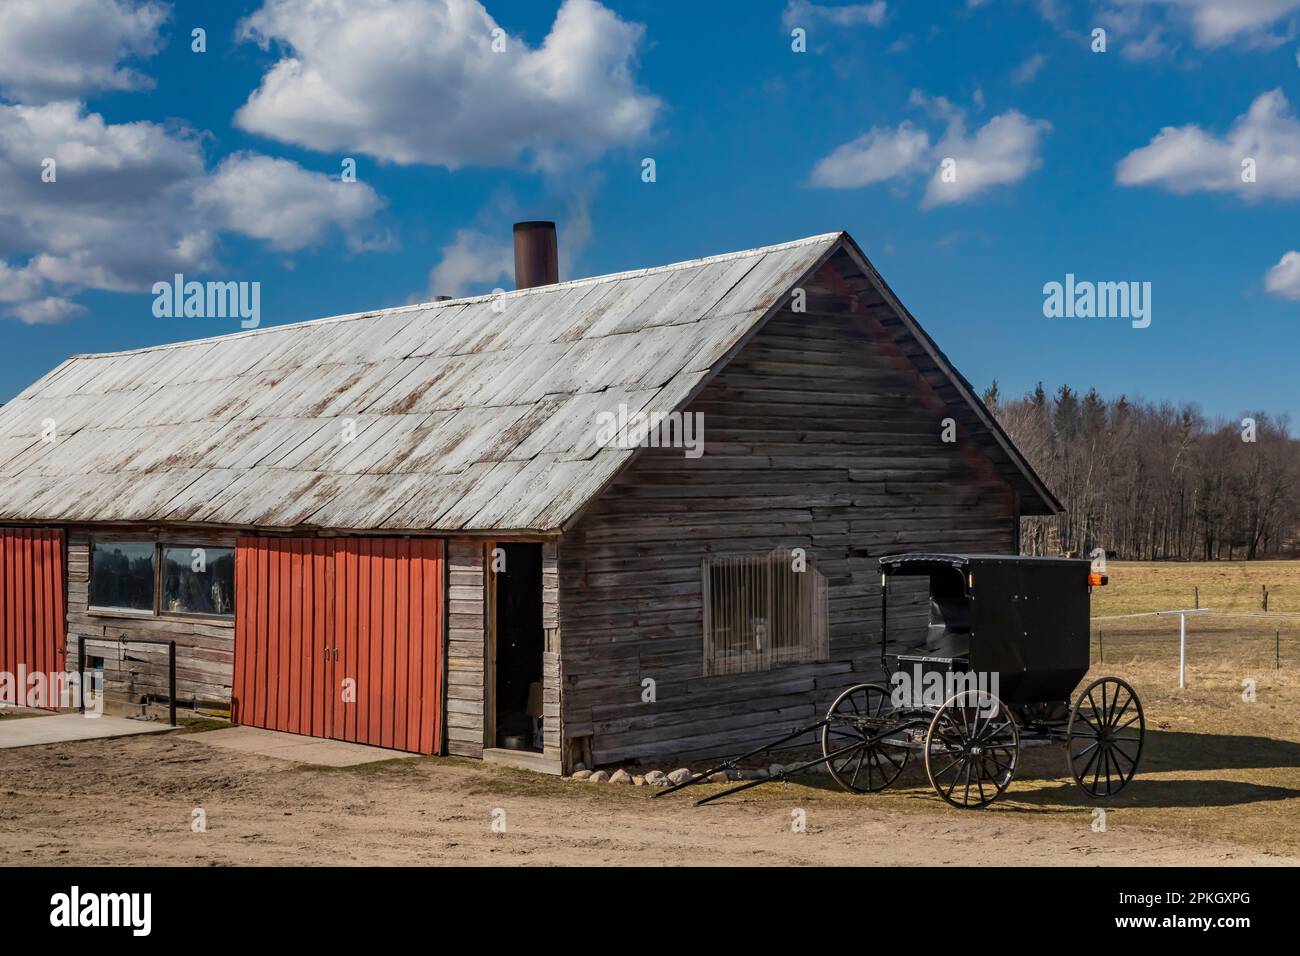 Merde et buggy Maple Sugaring sur une ferme Amish dans le centre du Michigan, aux États-Unis [pas de publication; licence éditoriale seulement] Banque D'Images